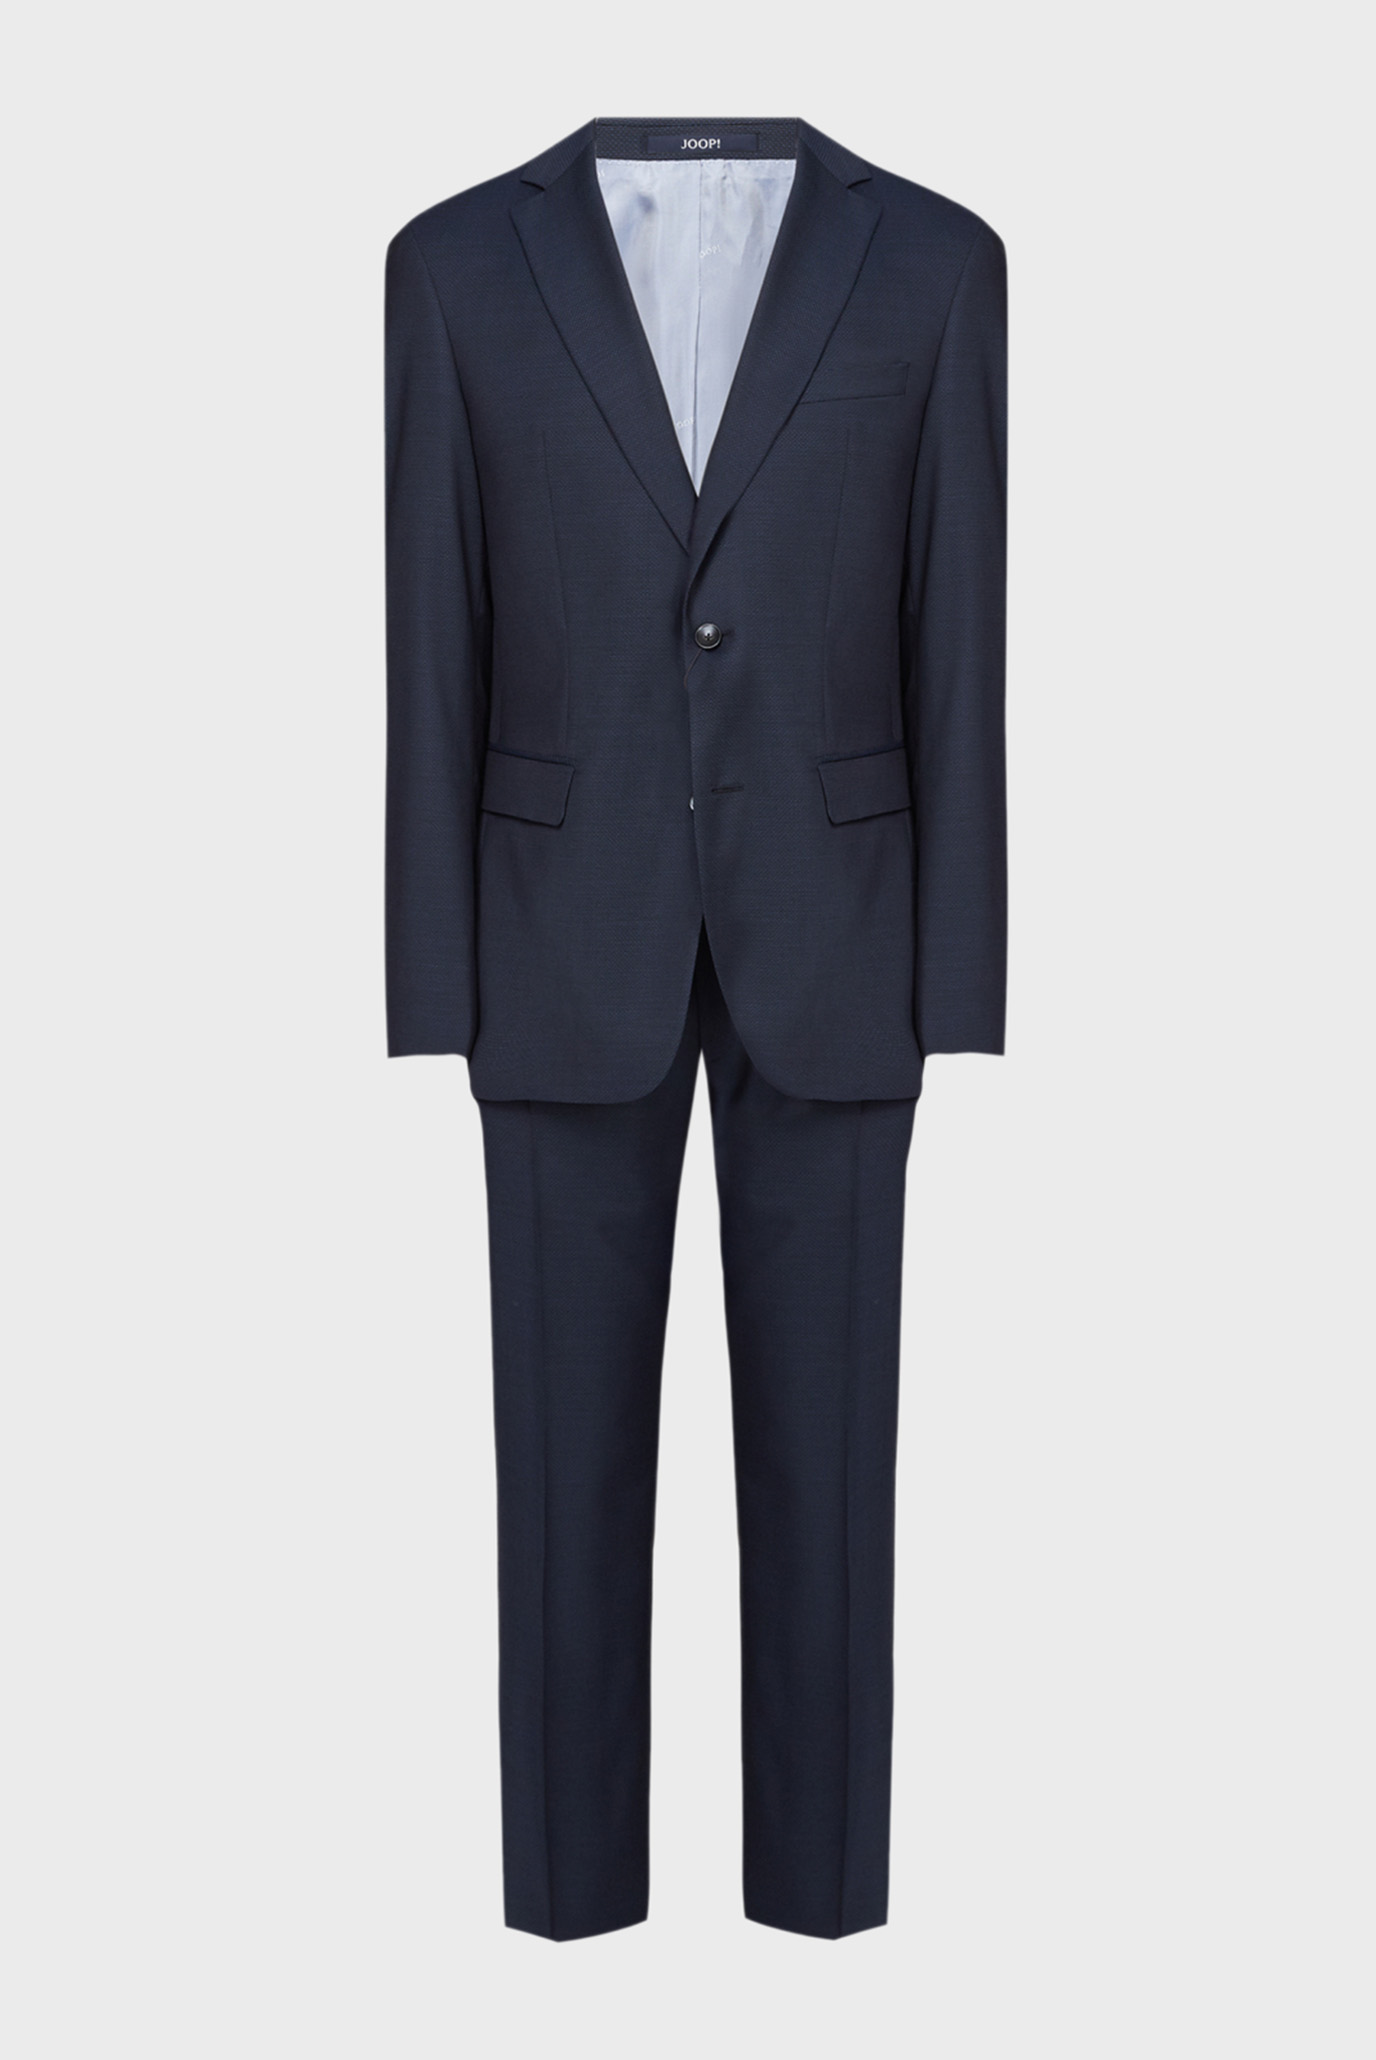 Мужской темно-синий шерстяной костюм (пиджак, брюки) 1